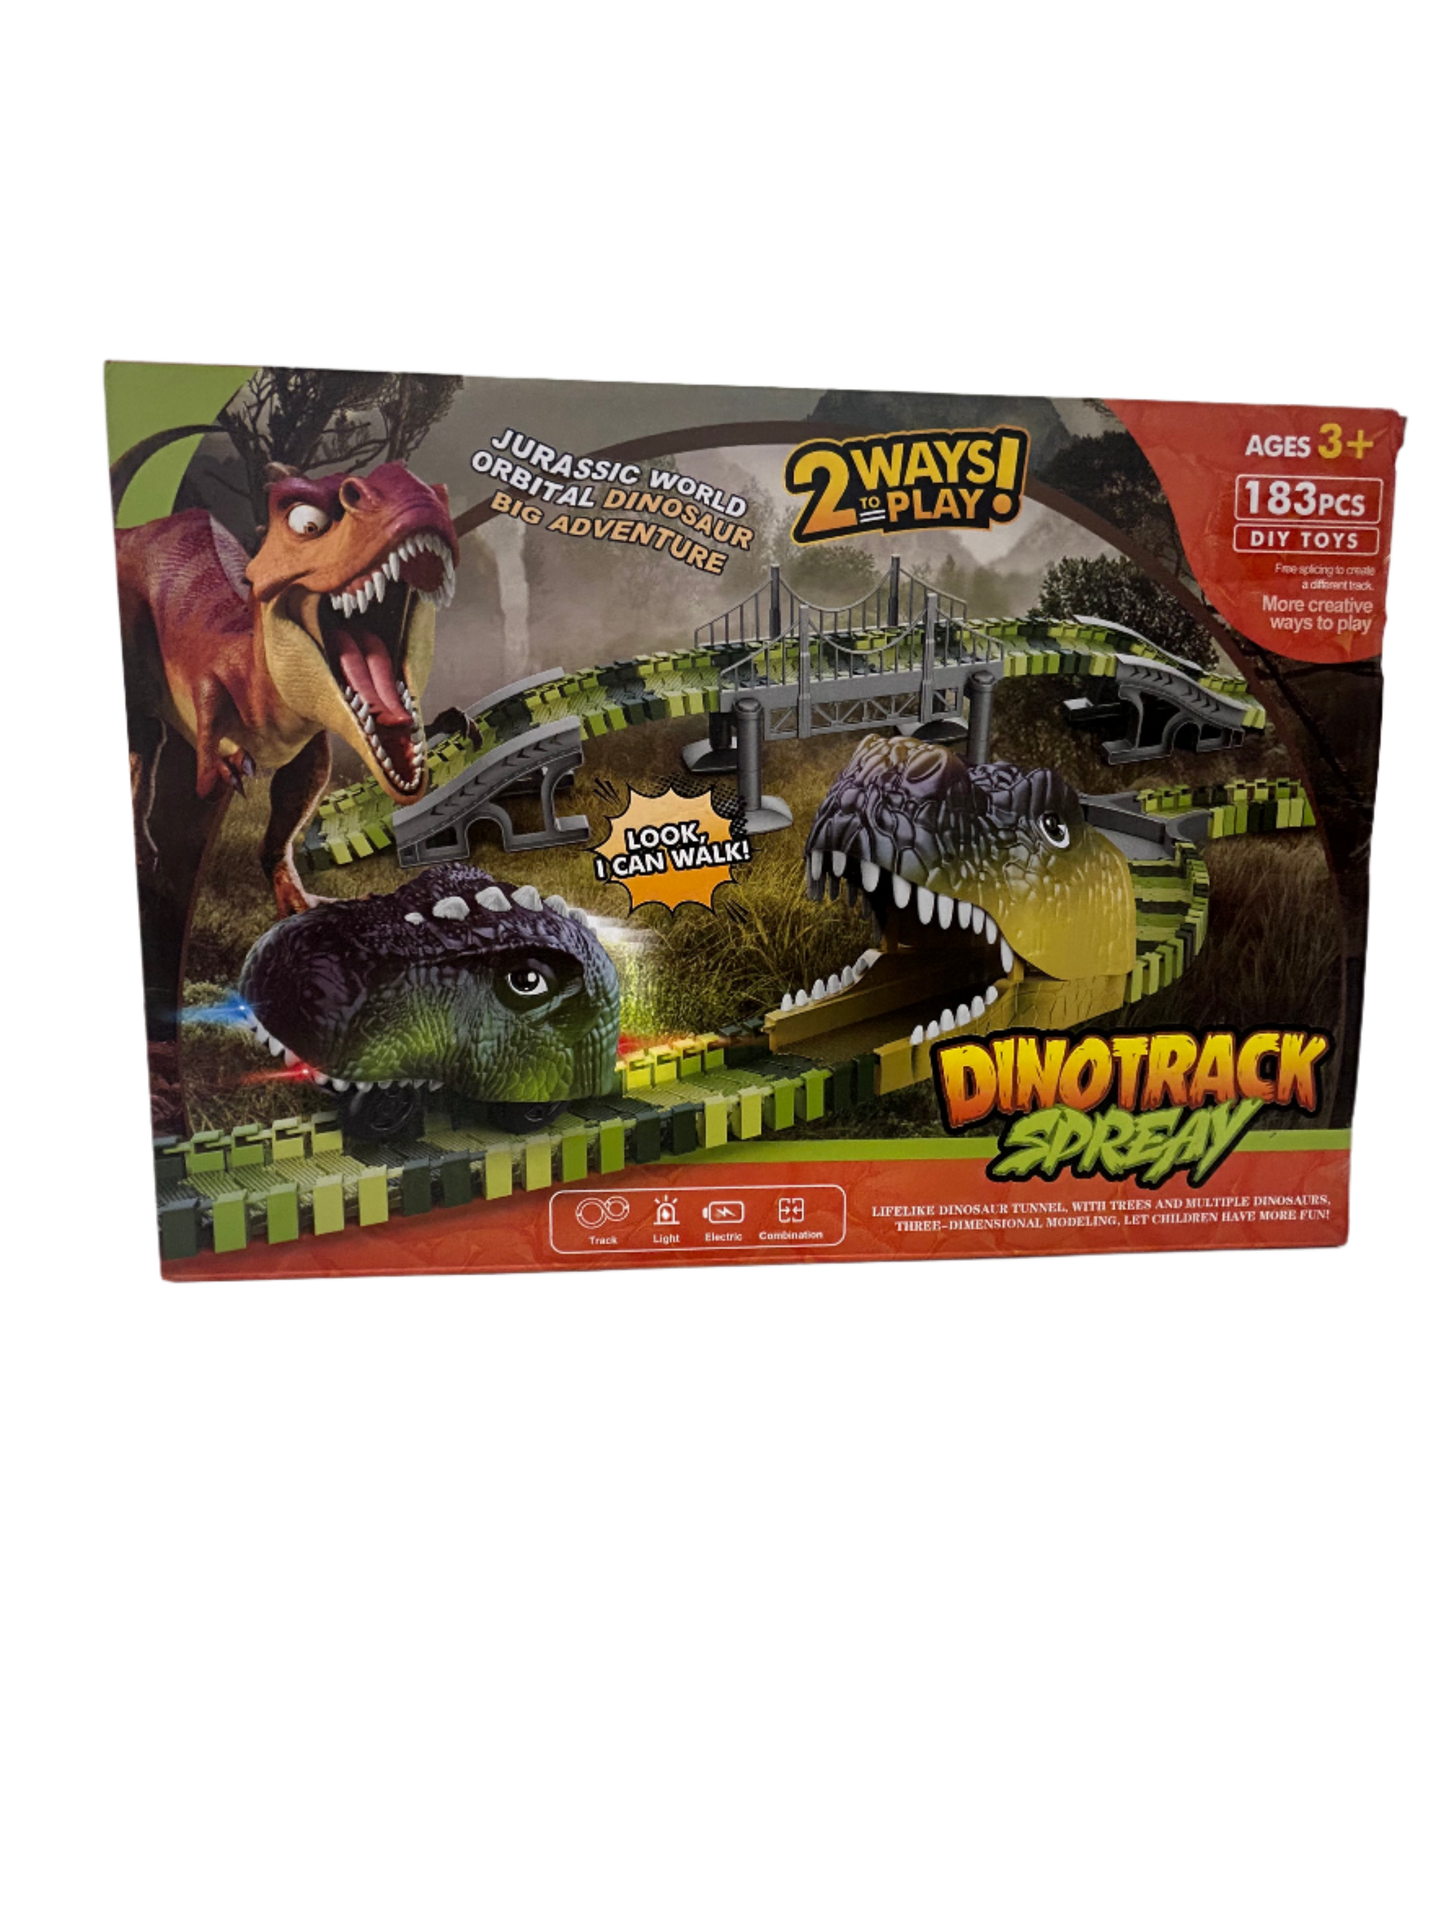 Dinotrack Spreay